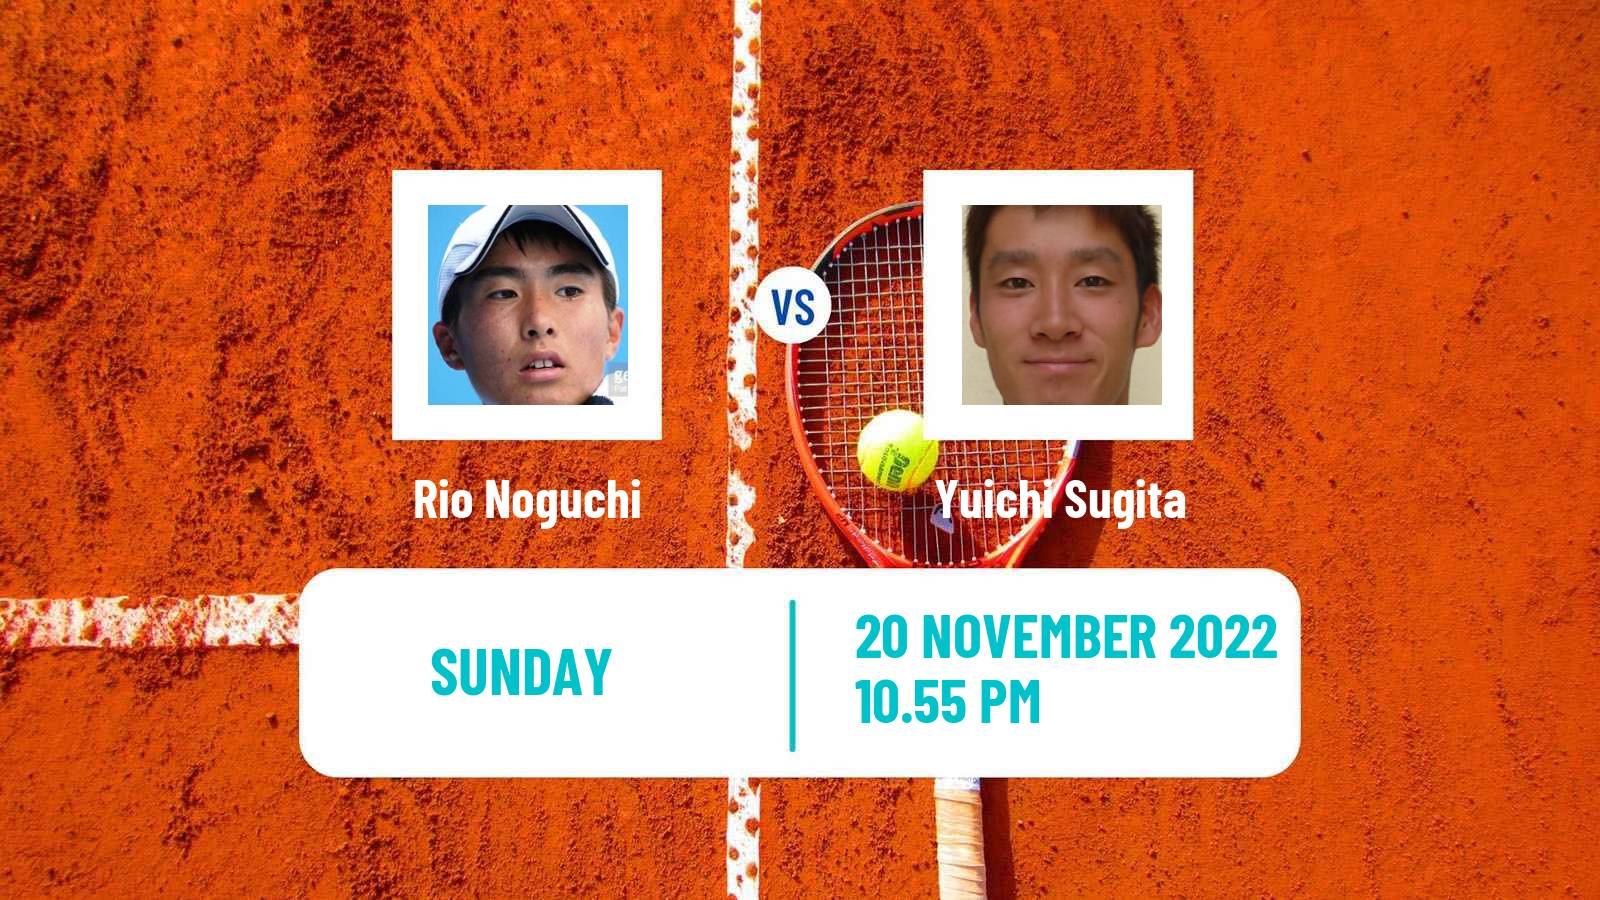 Tennis ATP Challenger Rio Noguchi - Yuichi Sugita